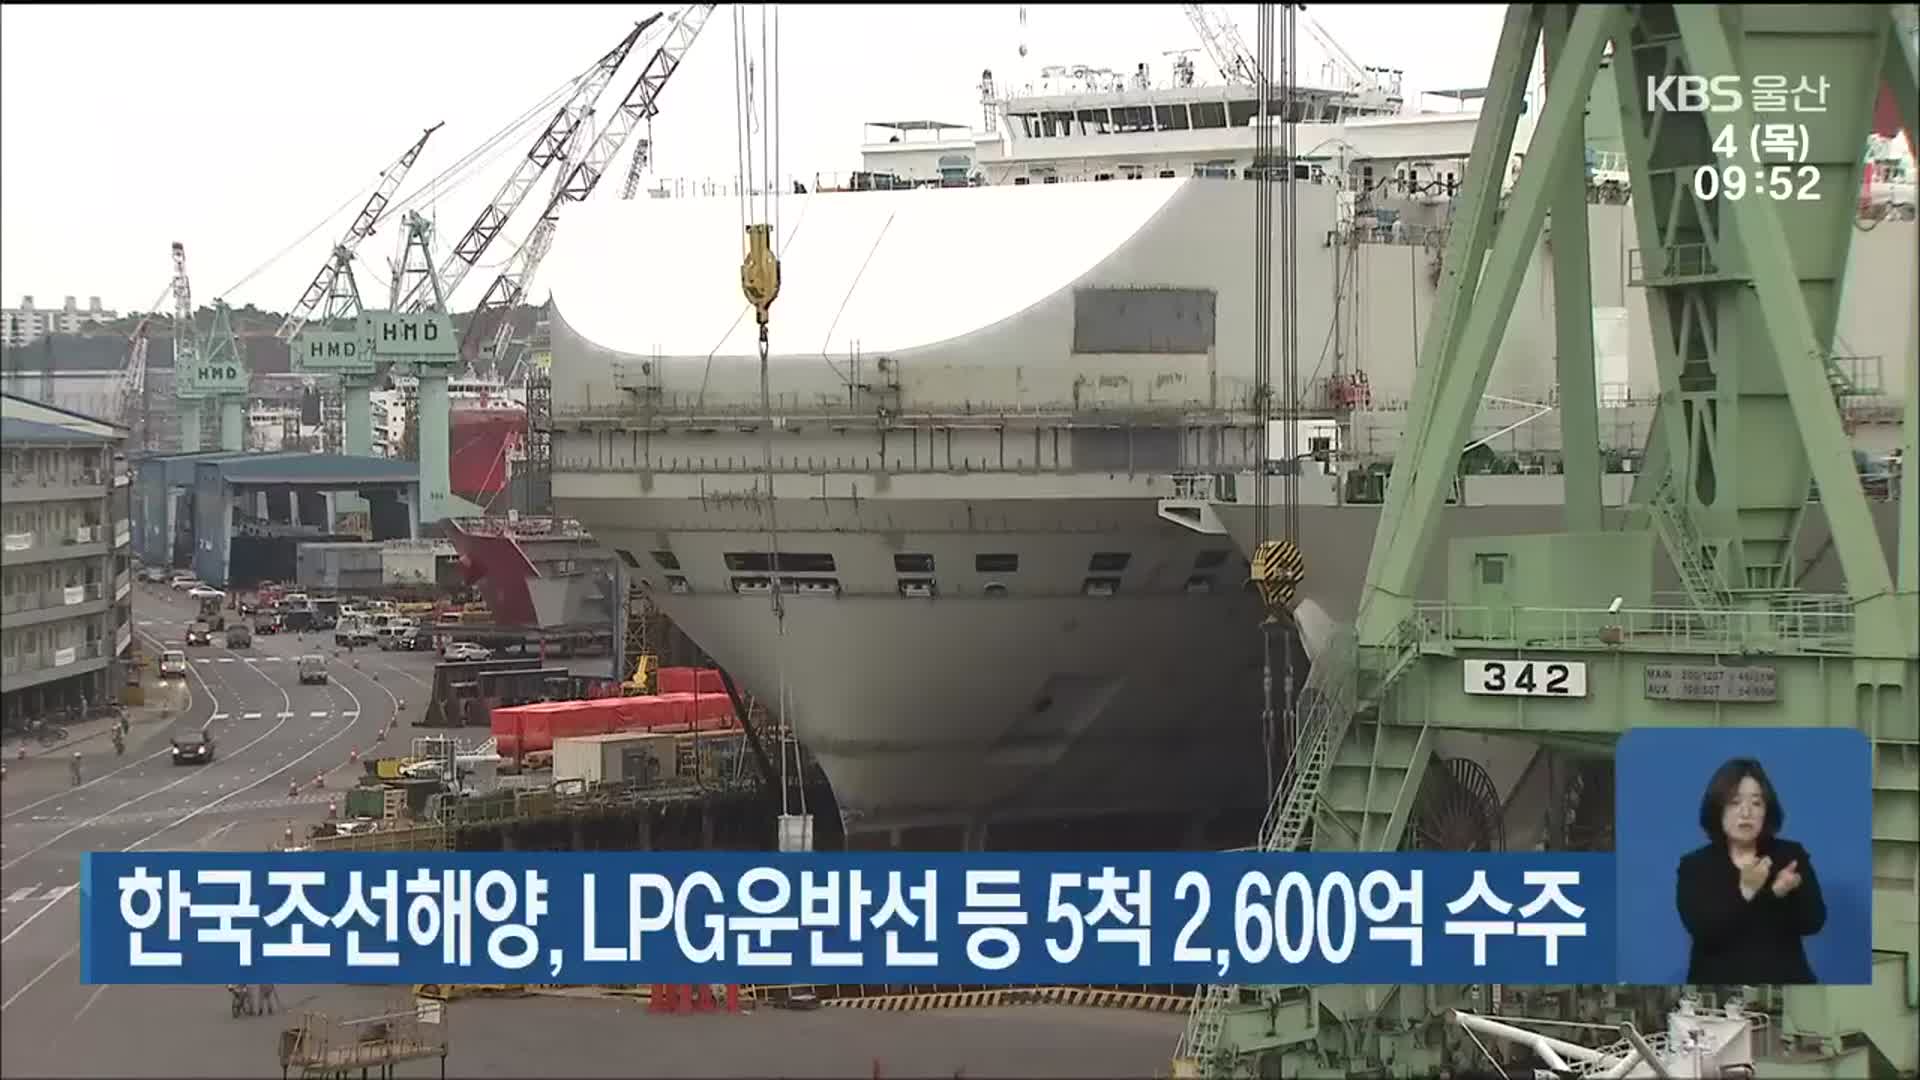 한국조선해양, LPG운반선 등 5척 2,600억 수주